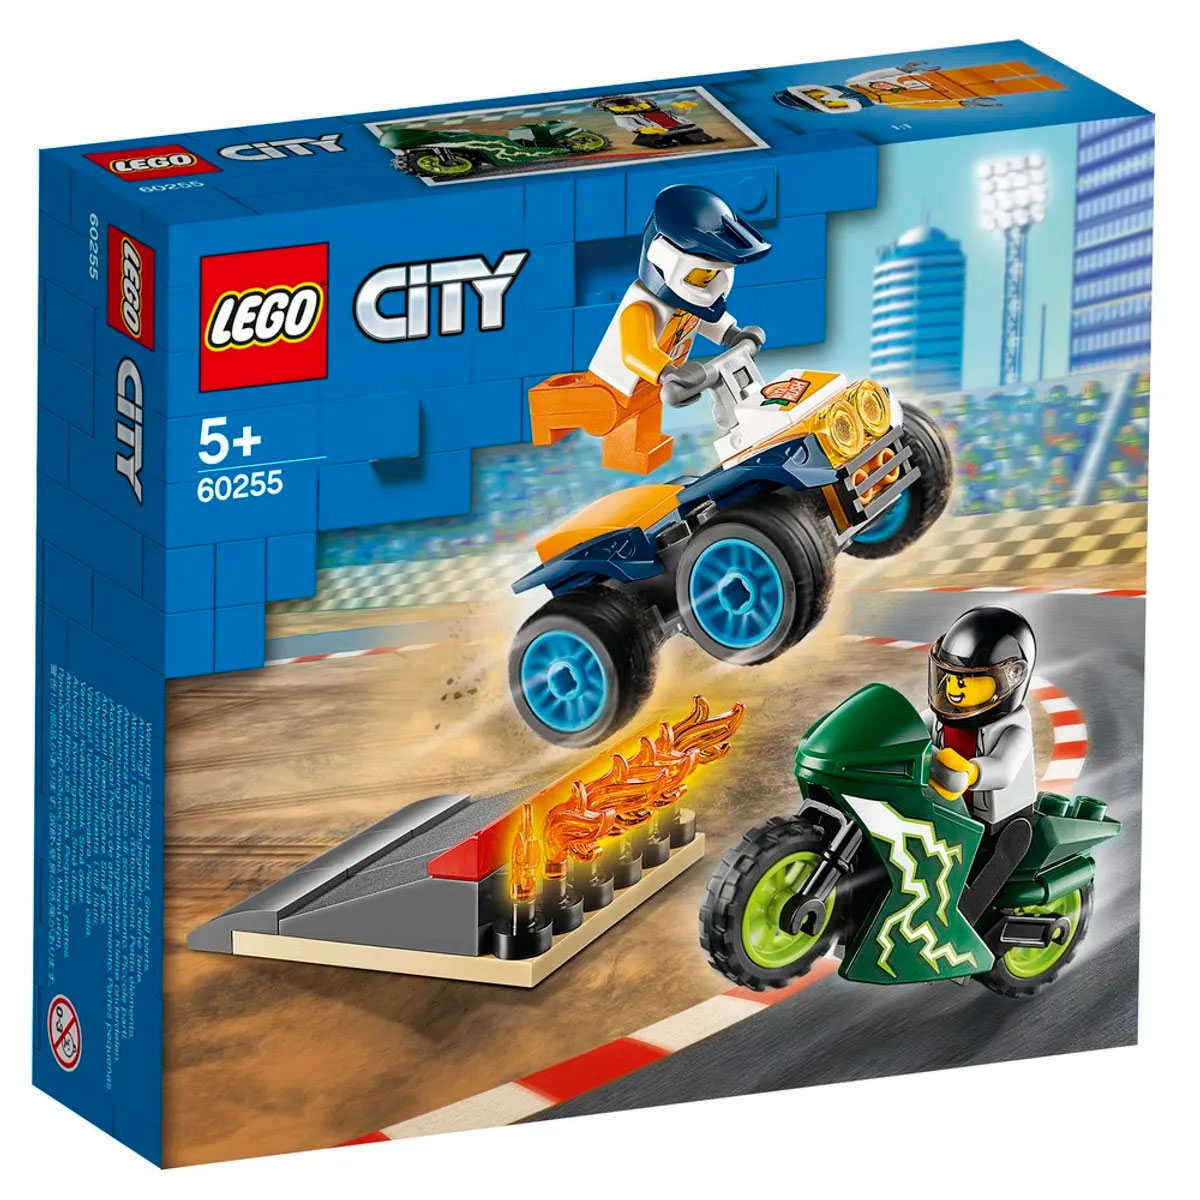 LEGO City - Equipe de Acrobacias - 60255